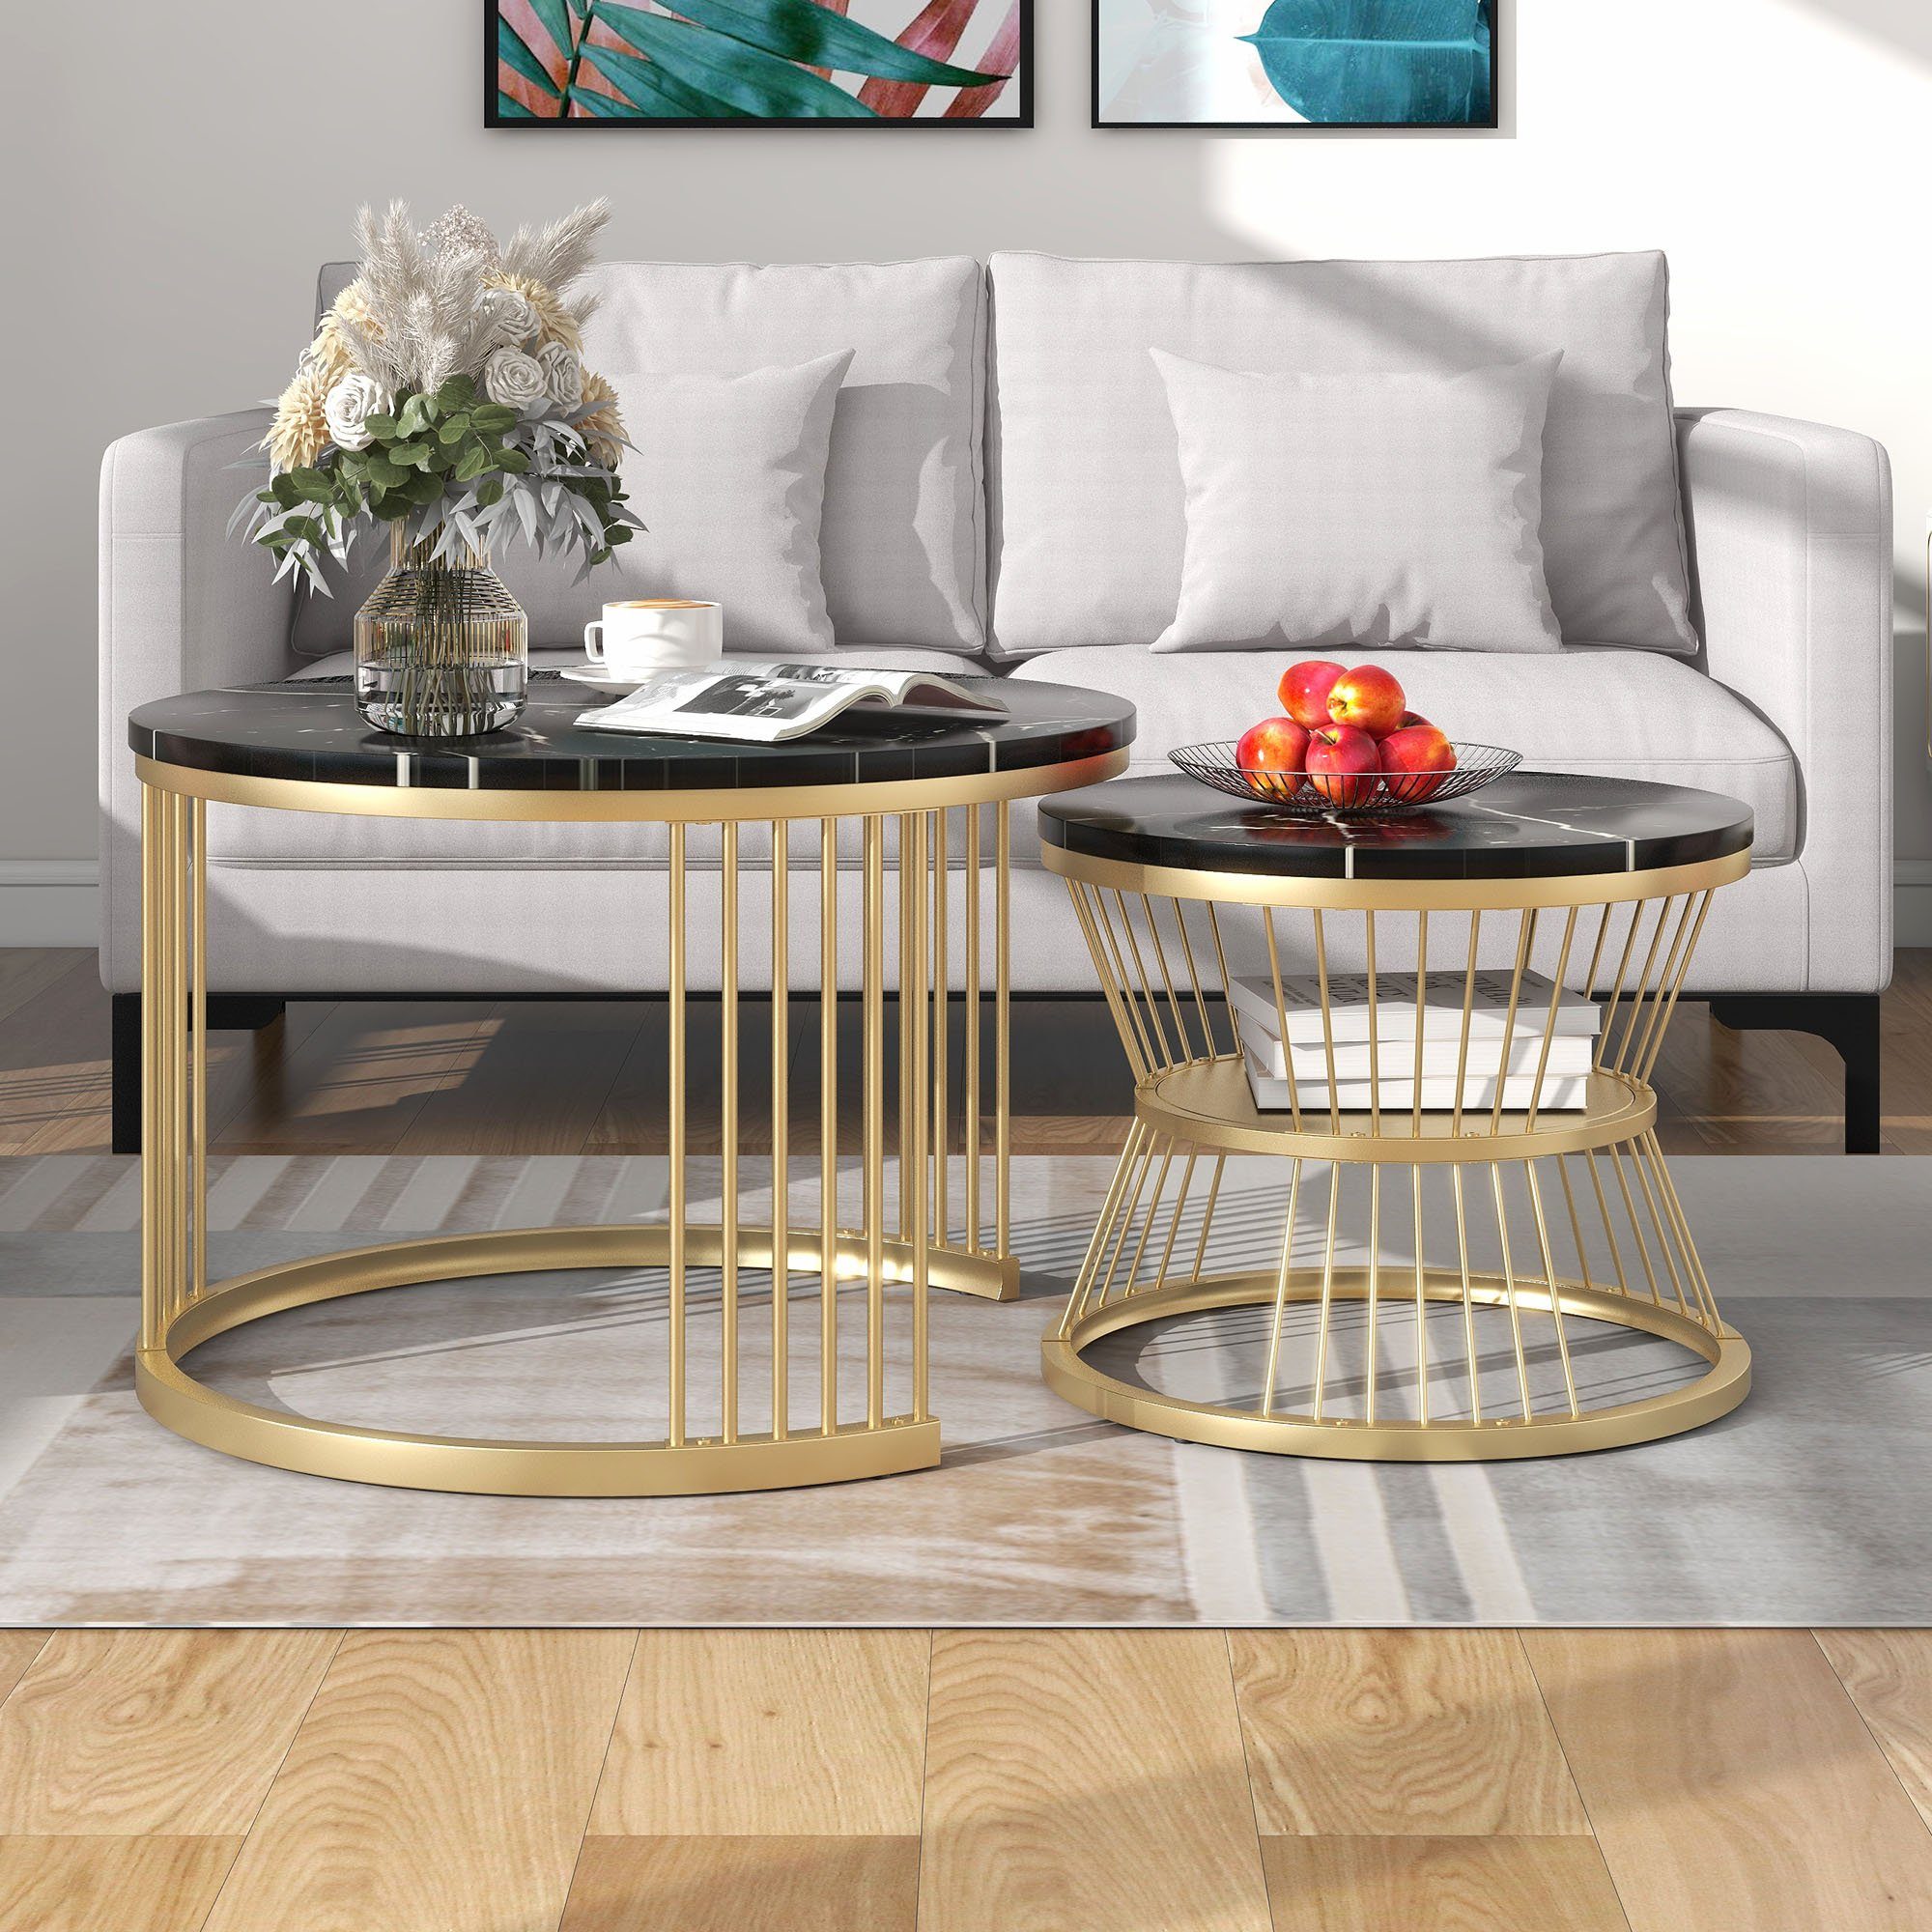 REDOM Couchtisch und 2er Schwarz+Gold Sofa Moderne (Moderne Nesting Marmor Runde Tischen Furnier von Nesting Endtische), Couchtisch, Seite Couchtisch Nest Set